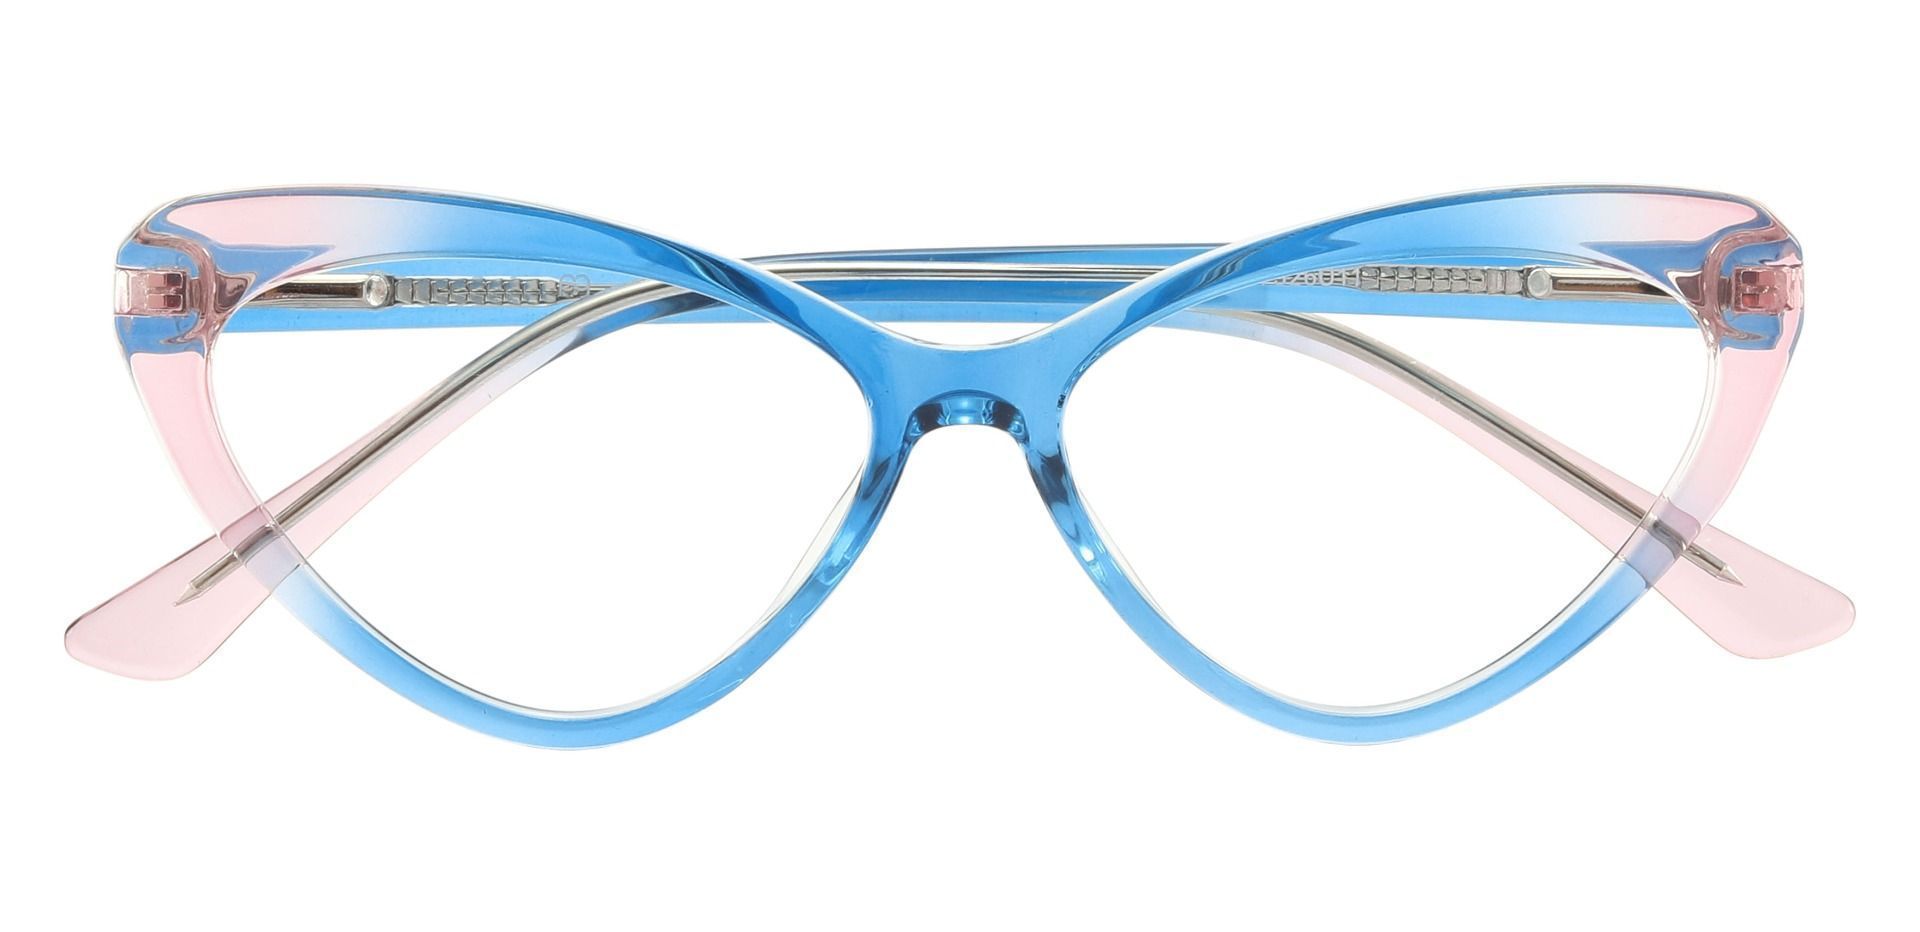 Avonlea Cat Eye Prescription Glasses - Blue